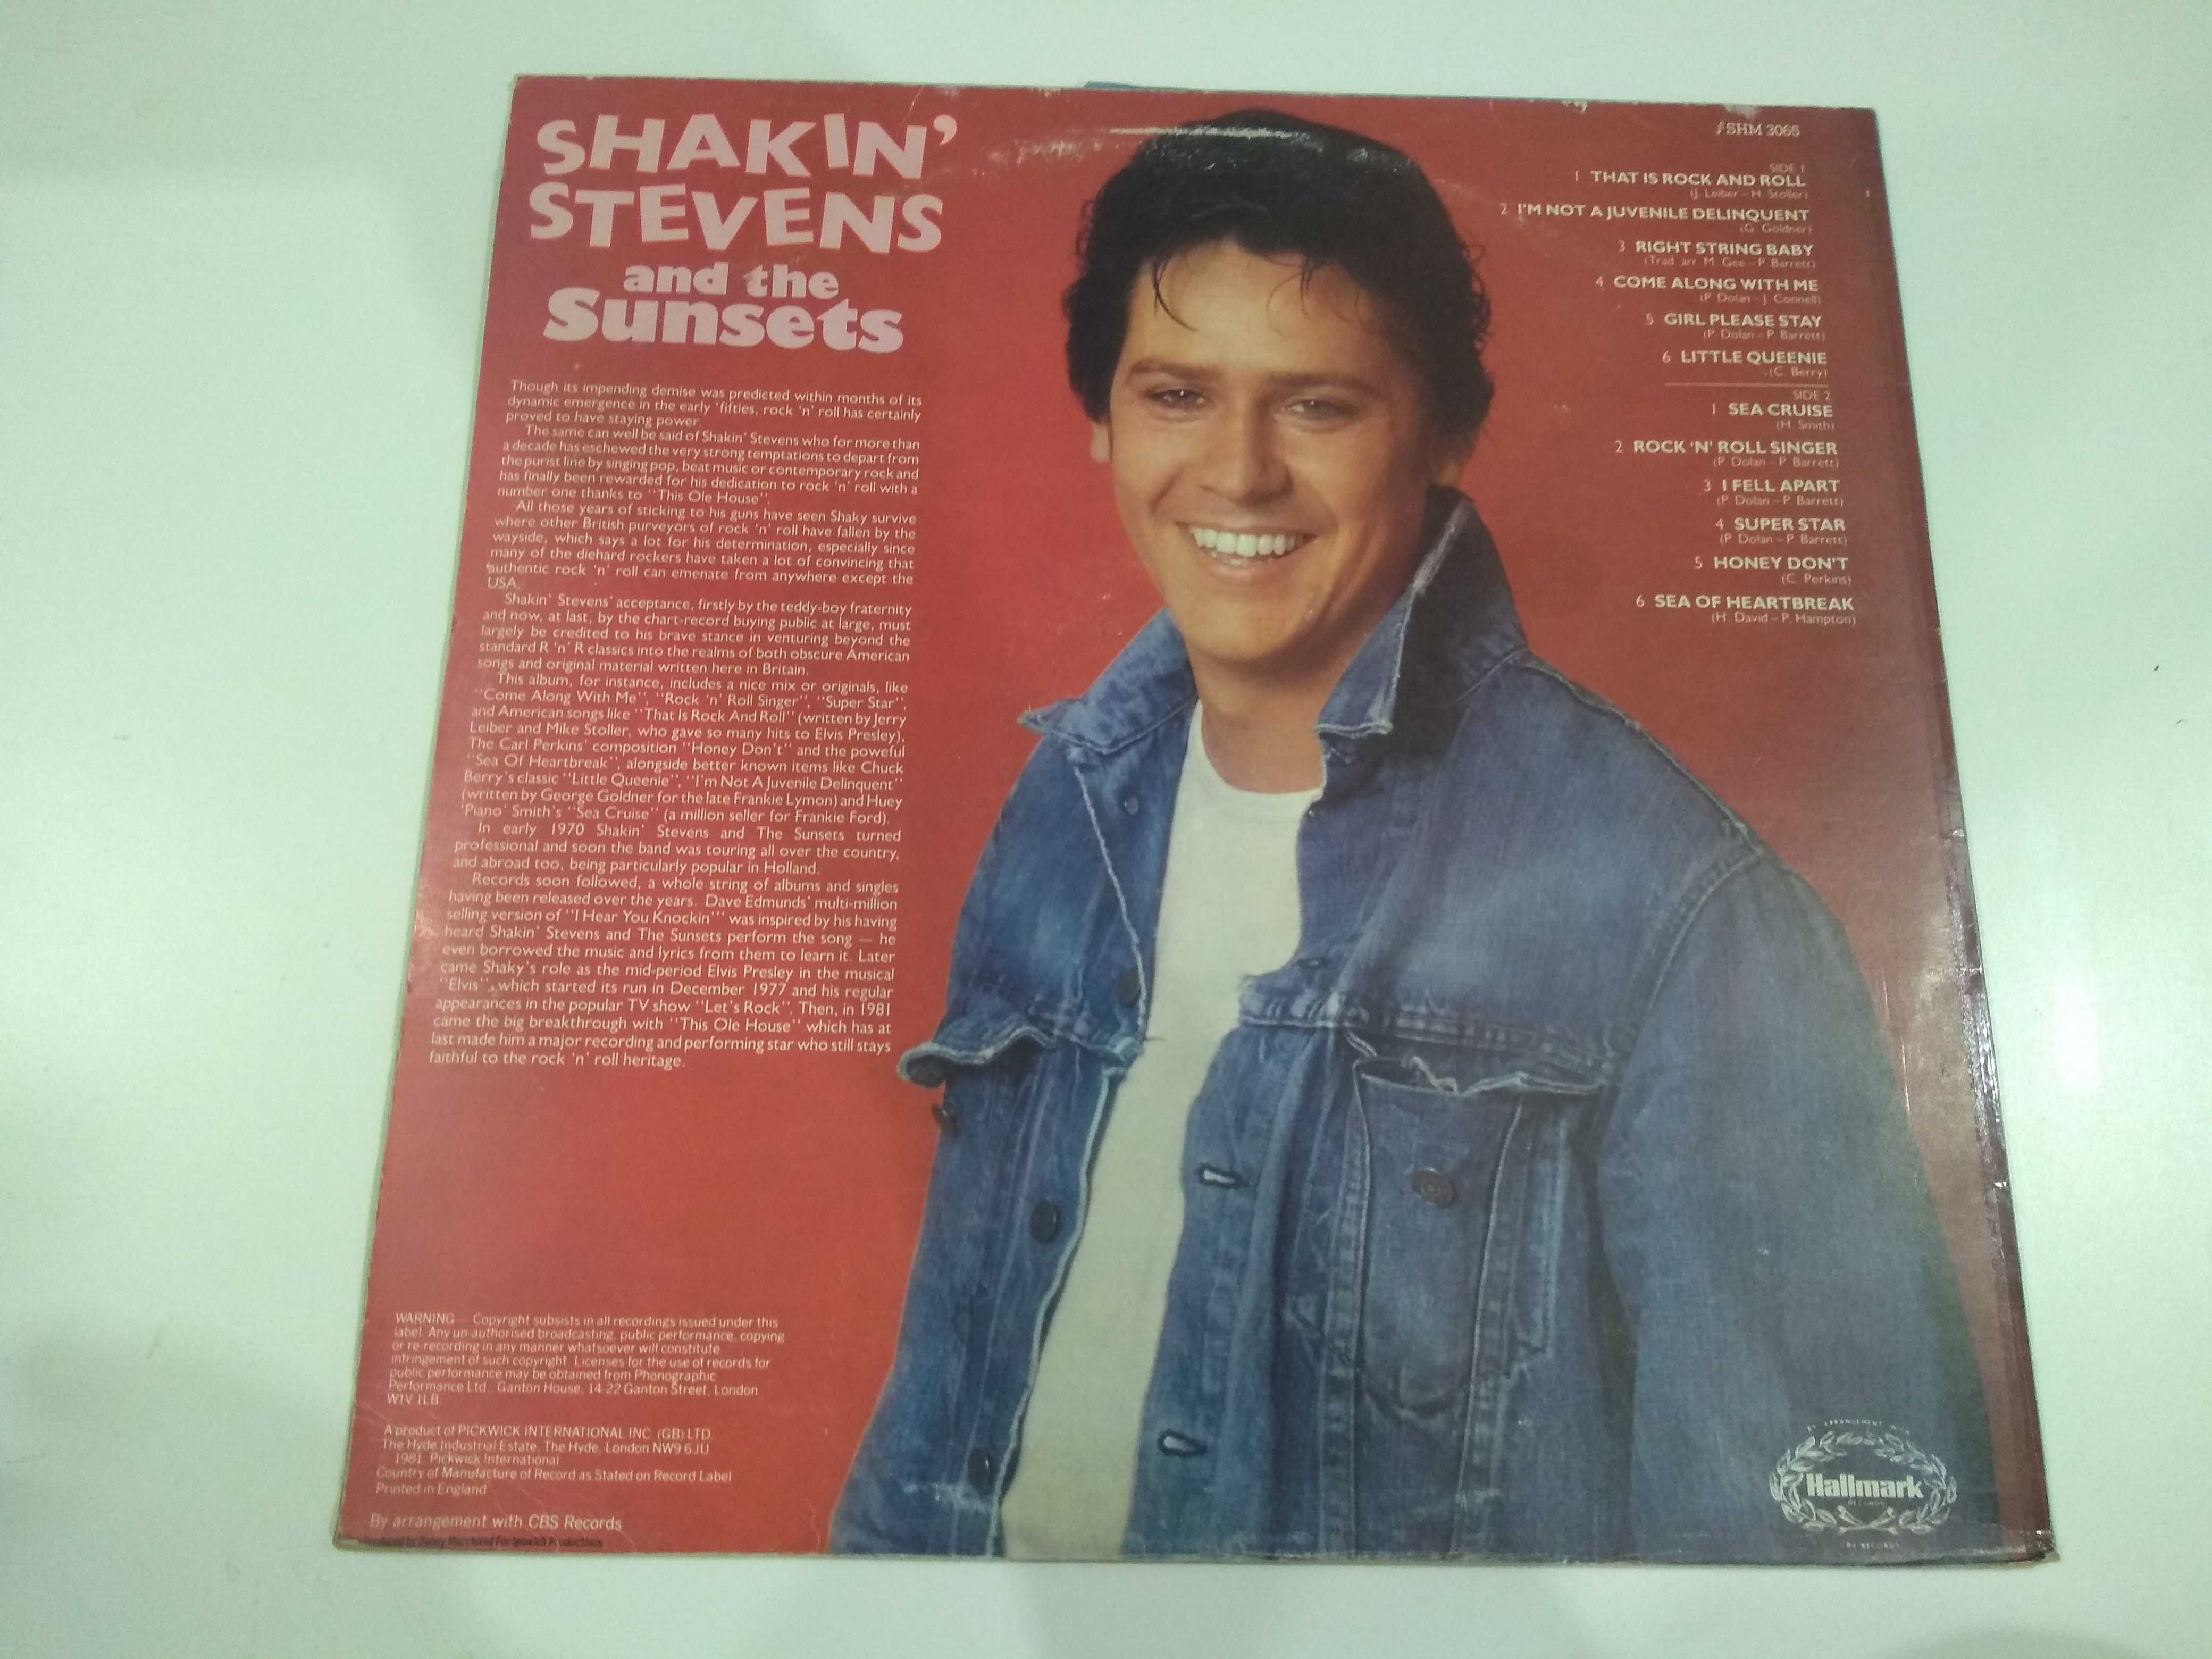 Dobra płyta - Shakin Stevens and the sunsets